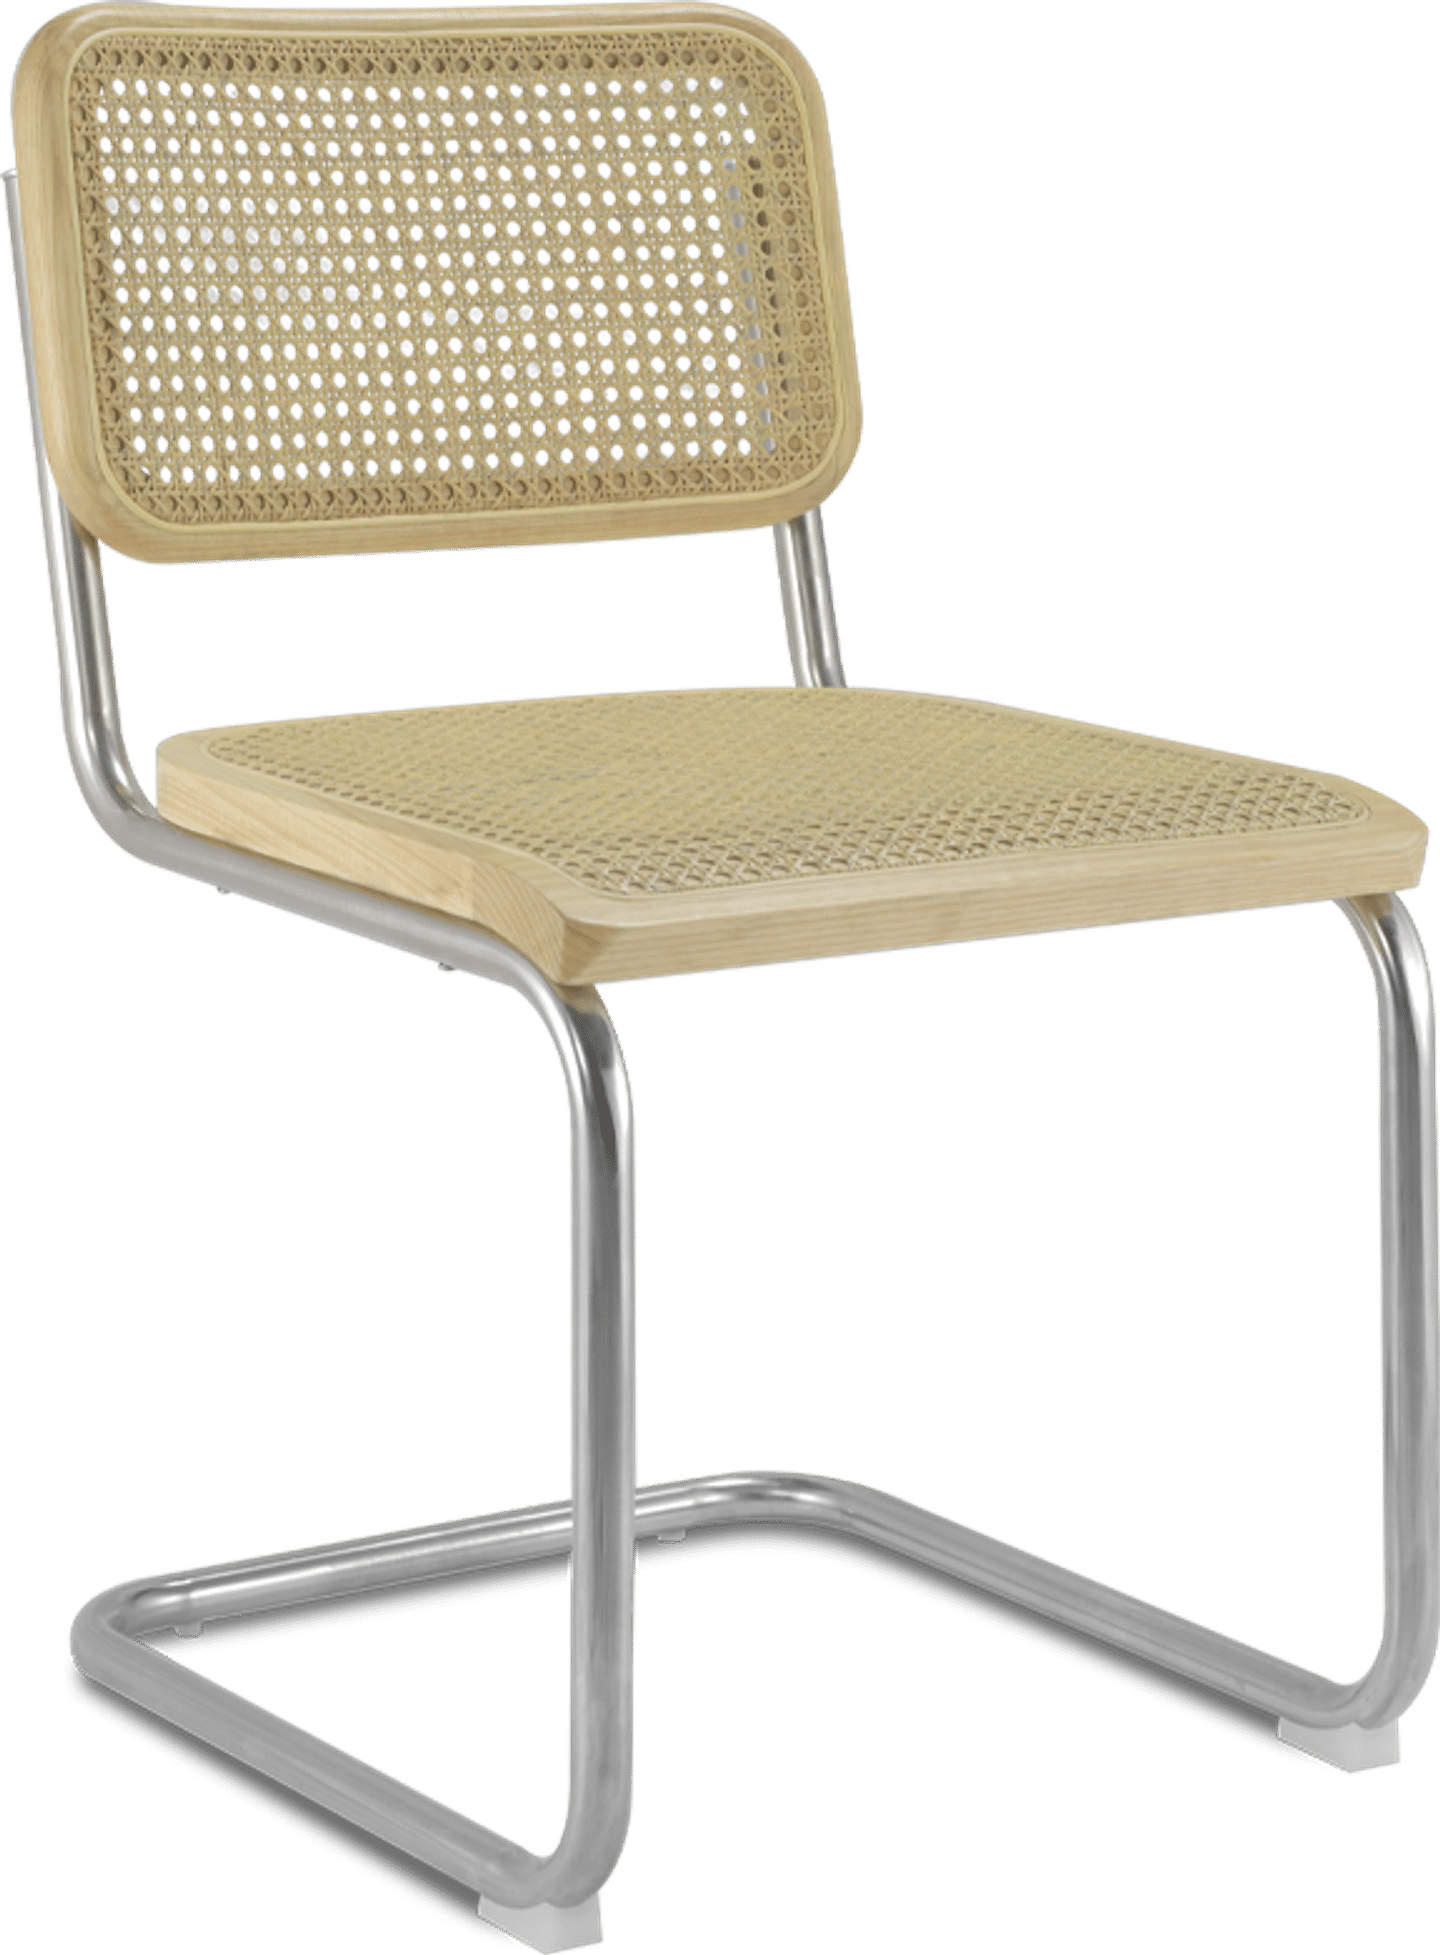 Cesca B32 Side Chair Ash image.